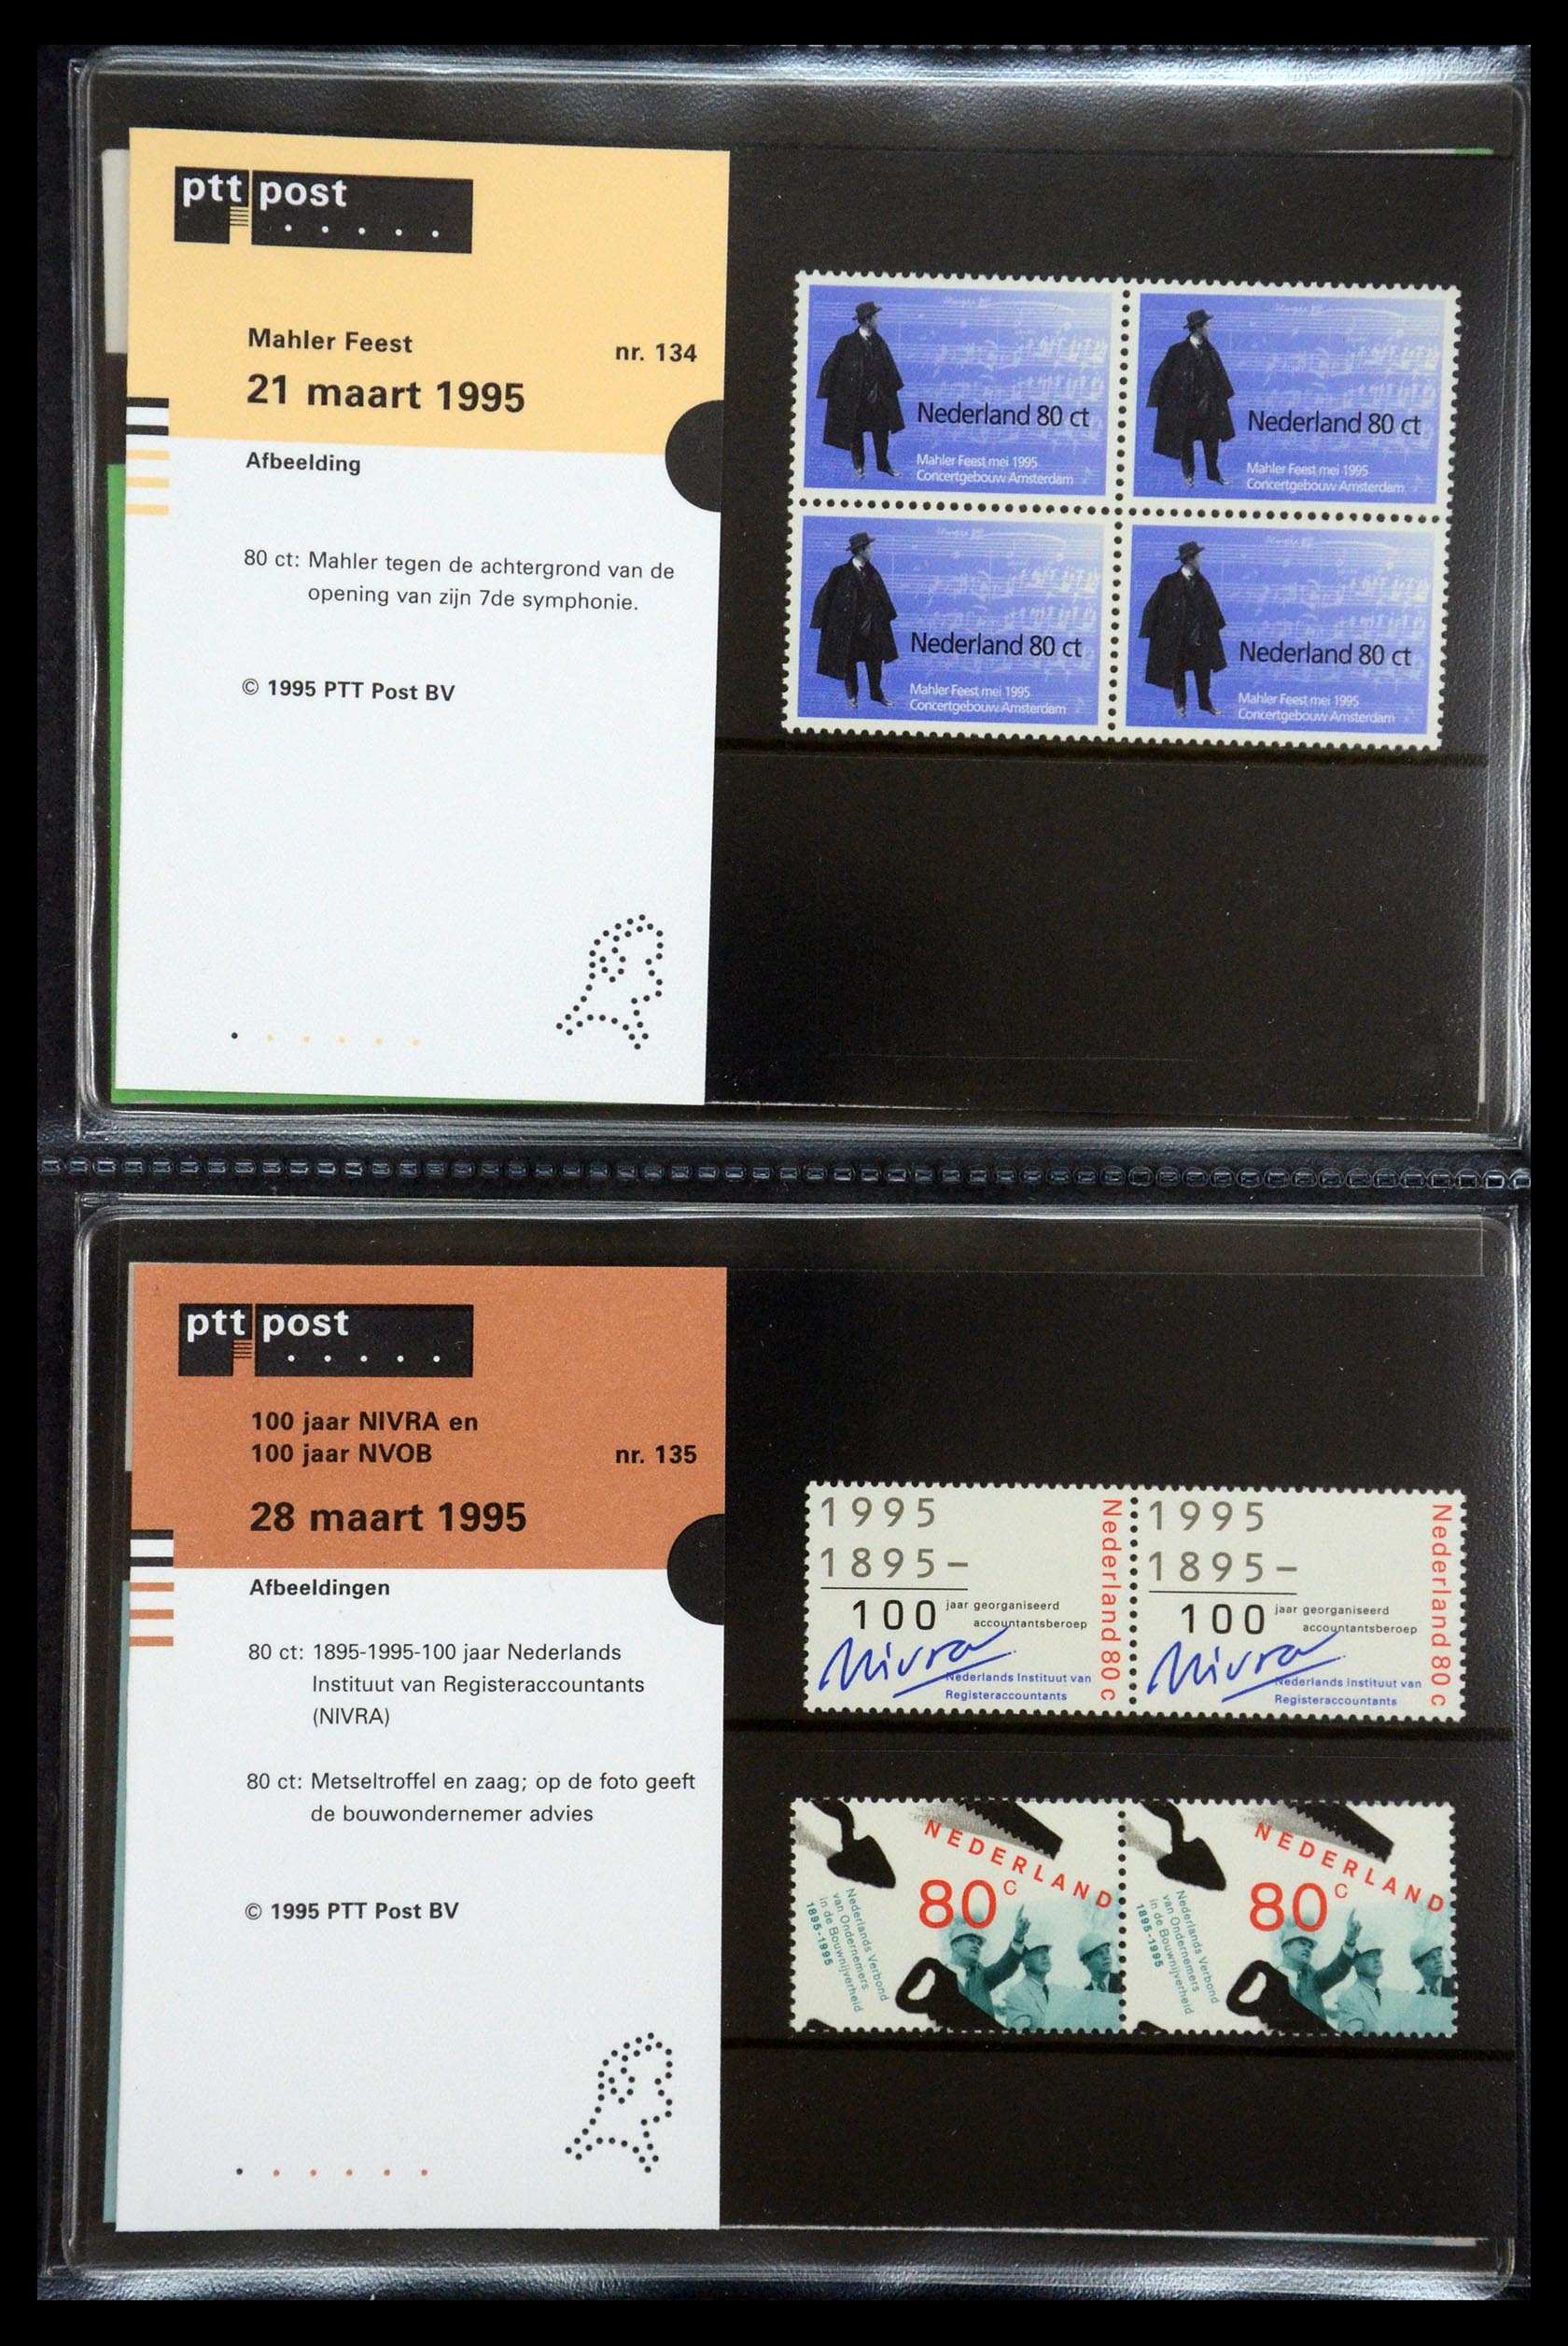 35187 069 - Stamp Collection 35187 Netherlands PTT presentation packs 1982-2019!